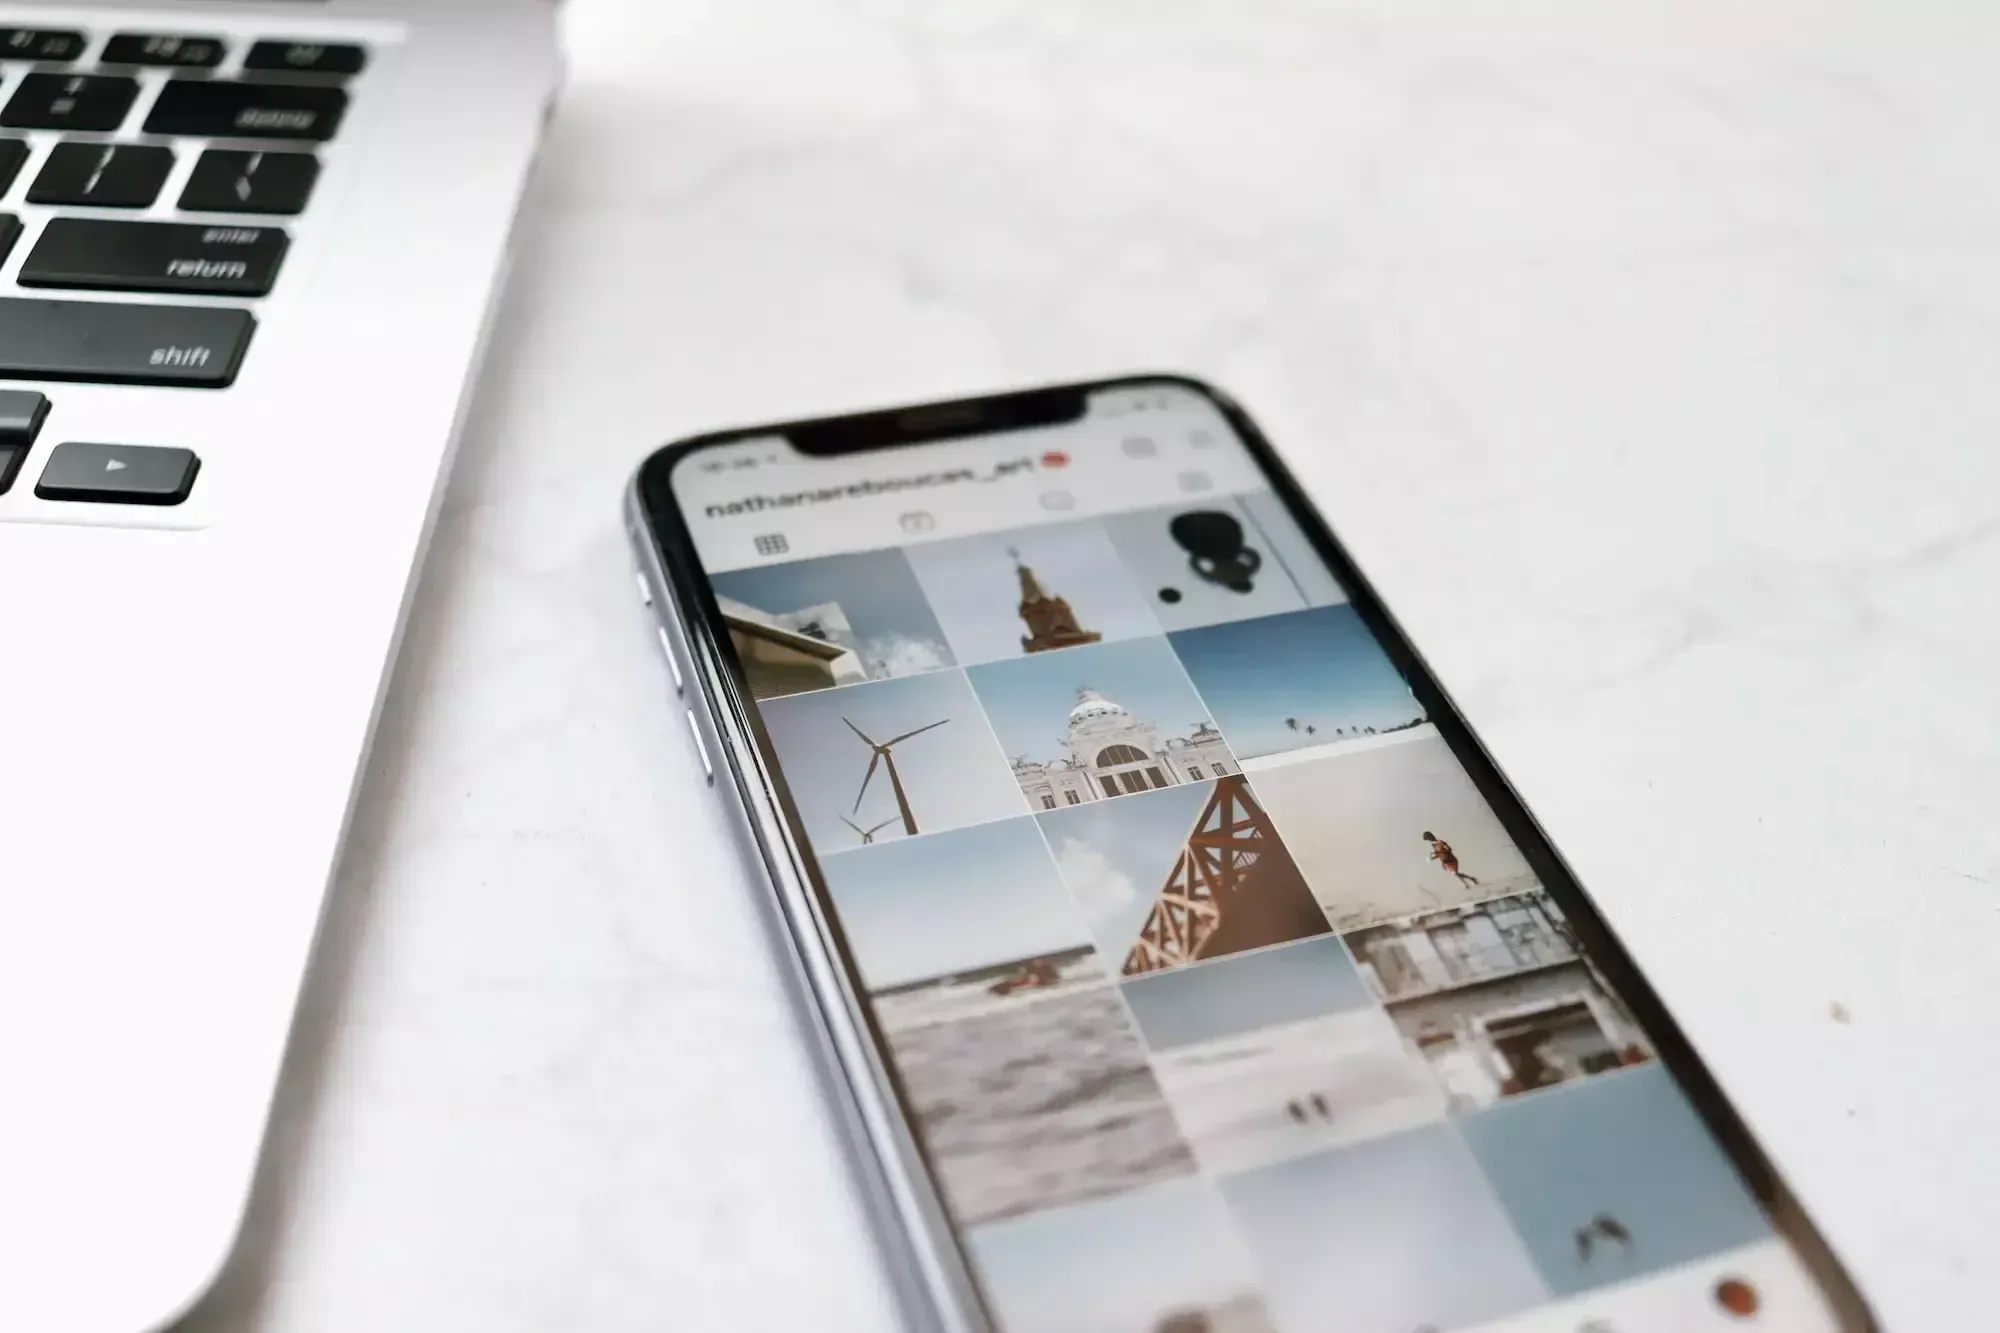 iPhone auf einem weißen Tisch neben MacBook, darauf ein Instagram-Profil mit Architekturbildern.